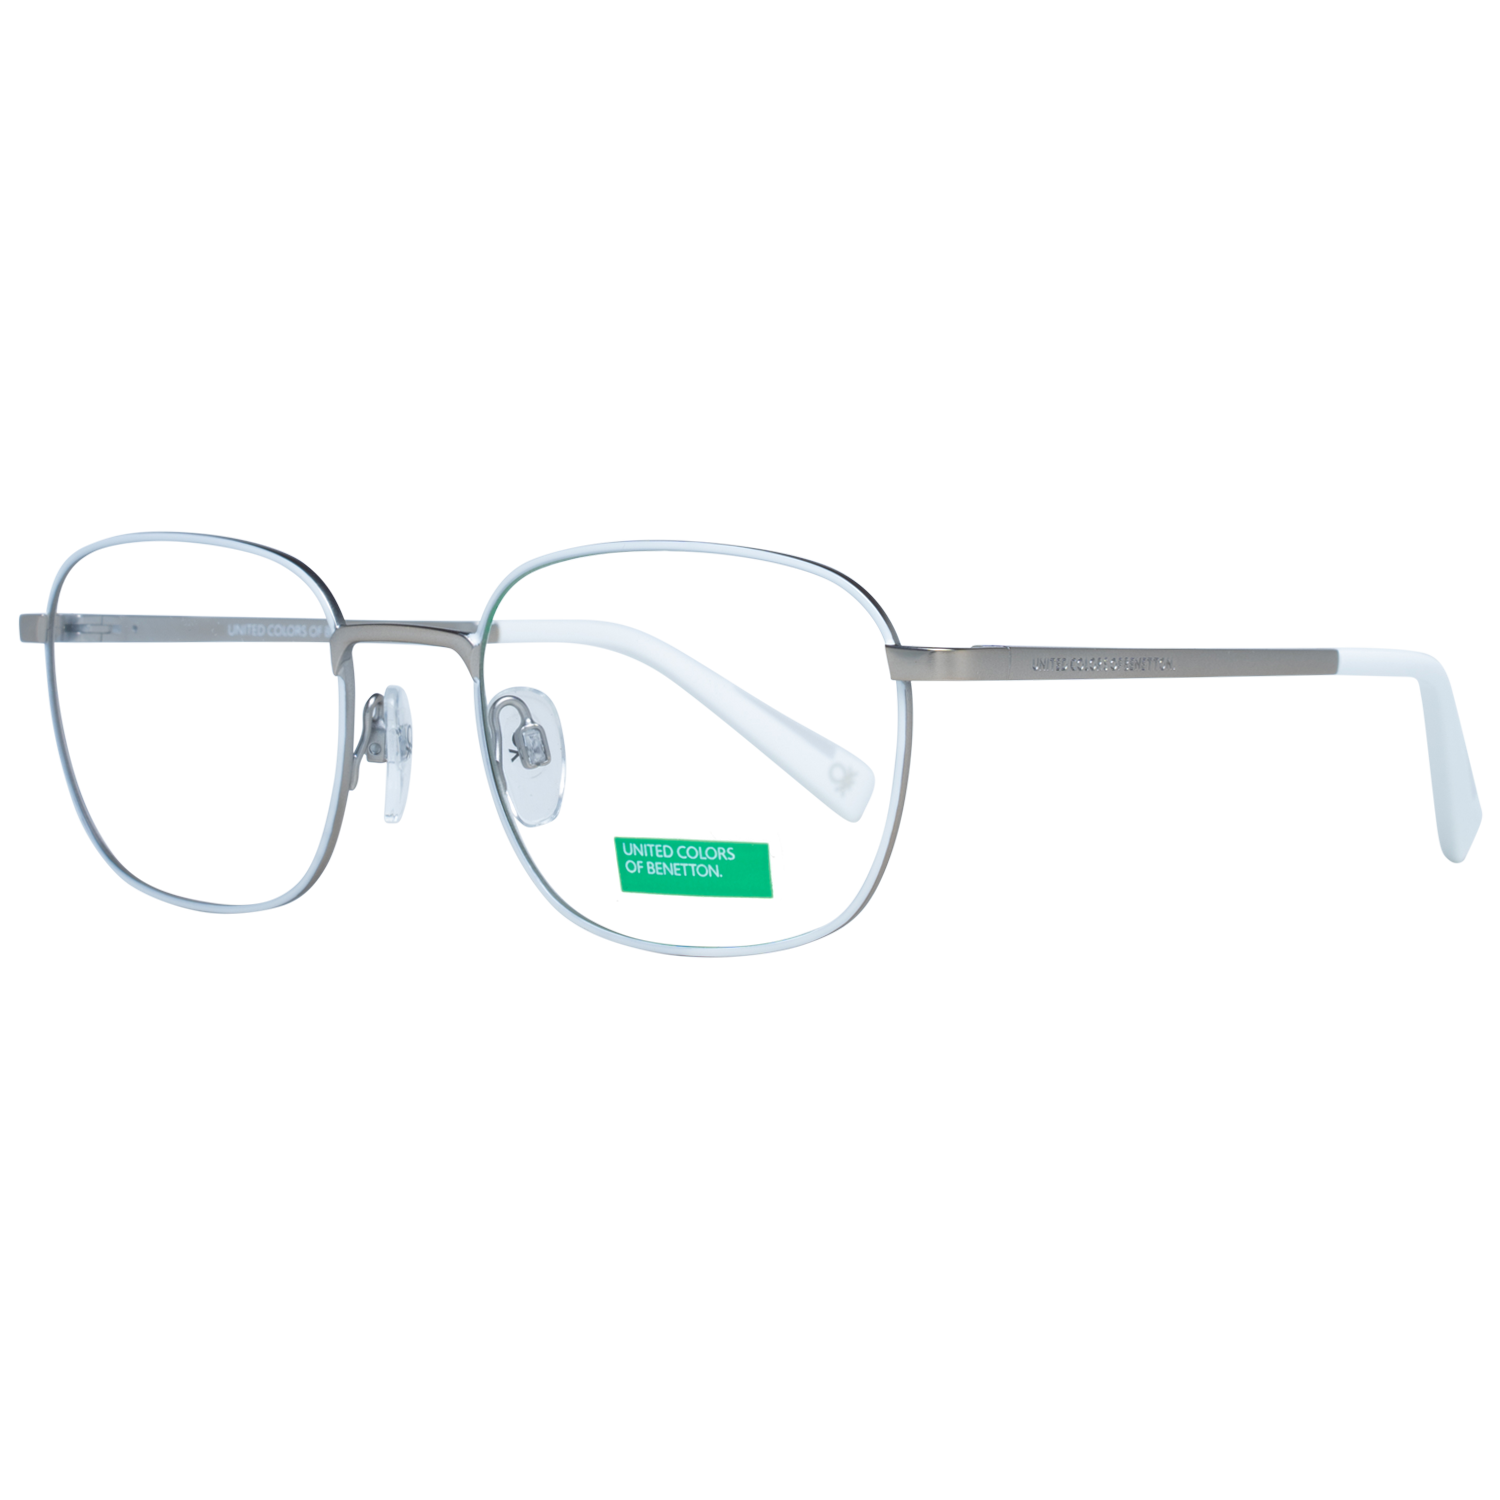 Benetton Frames Benetton Glasses Frames BEO3022 800 52 Eyeglasses Eyewear UK USA Australia 